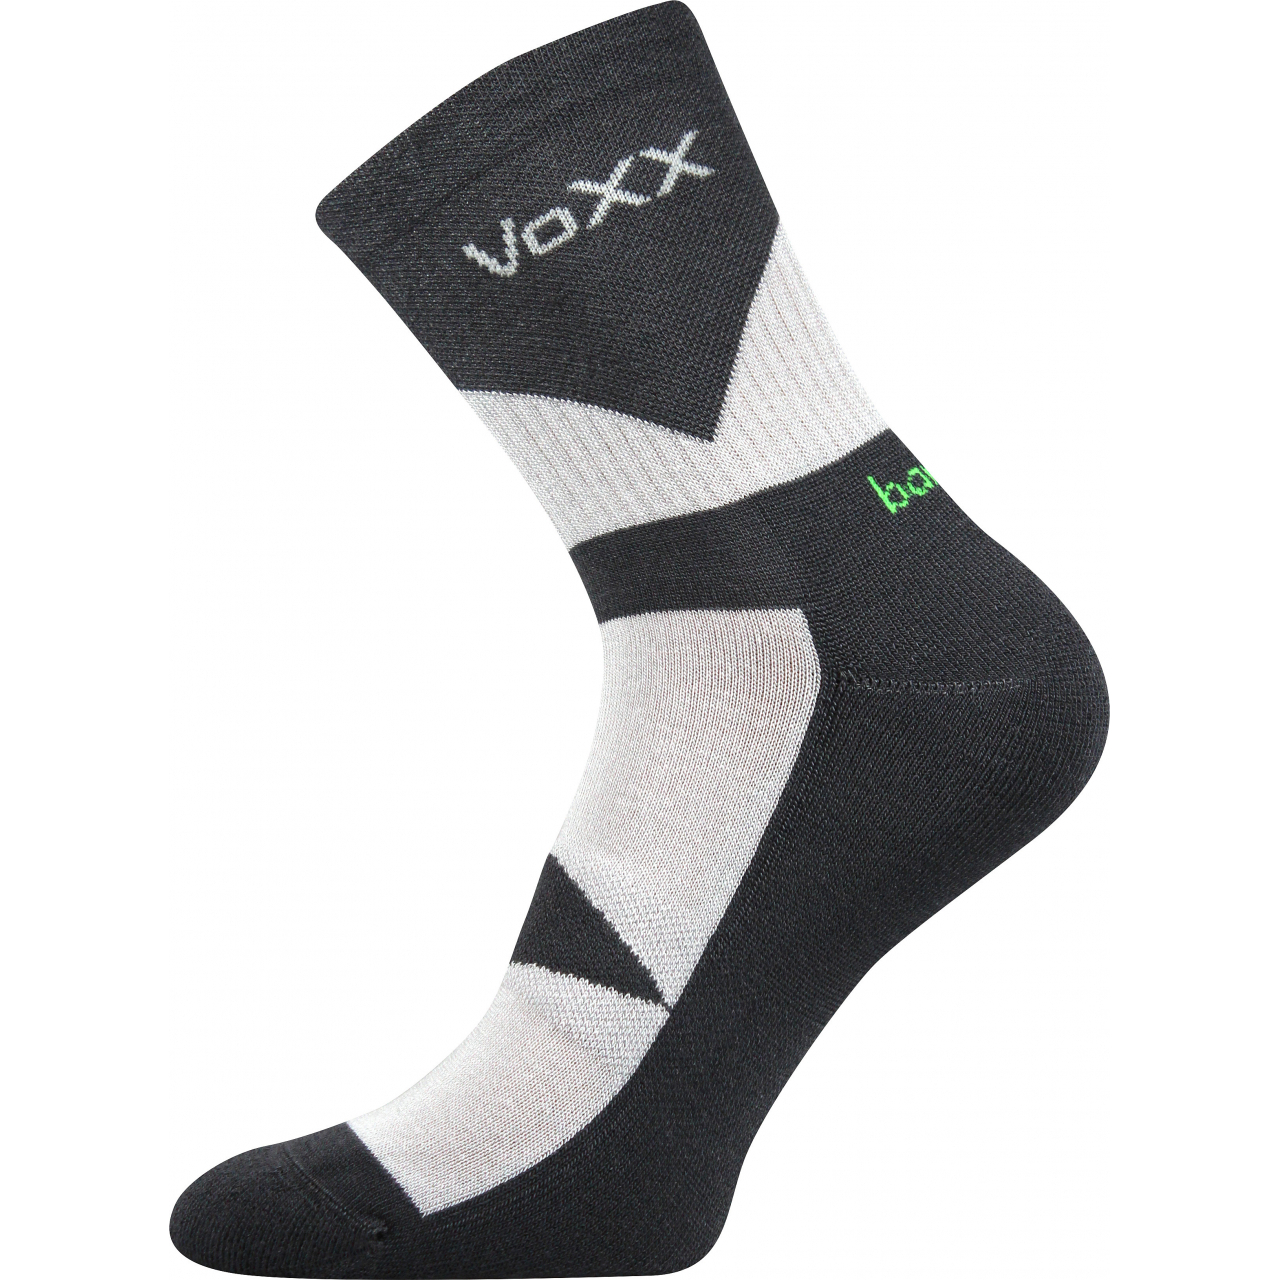 Ponožky sportovní Voxx Bambo - antracitové-šedé, 43-46